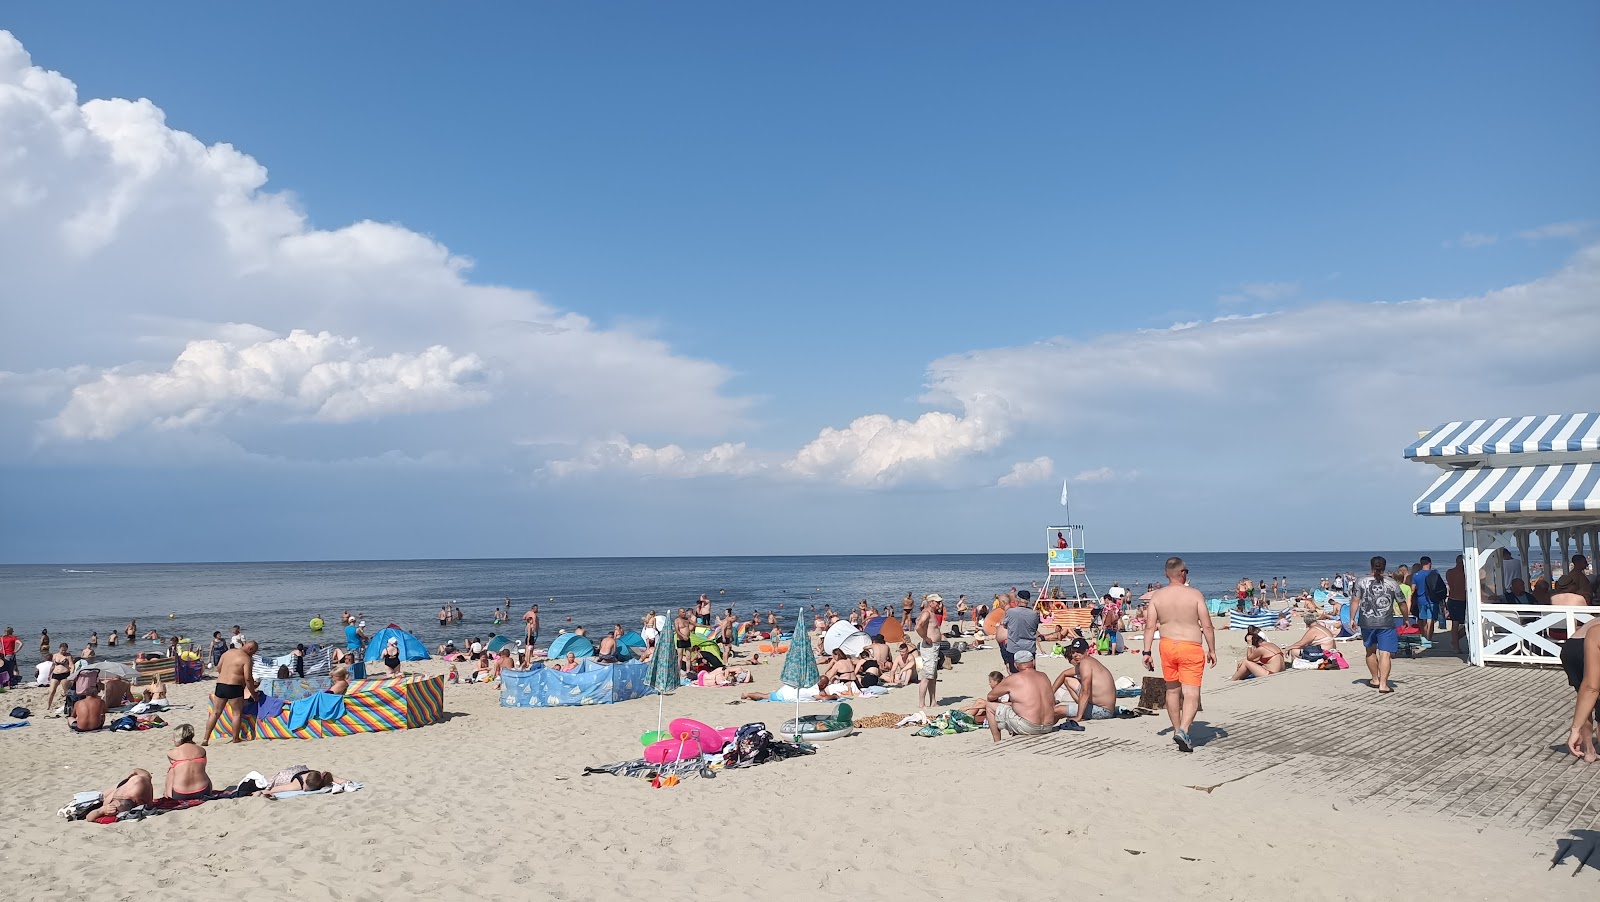 Krynica Morska beach的照片 具有非常干净级别的清洁度